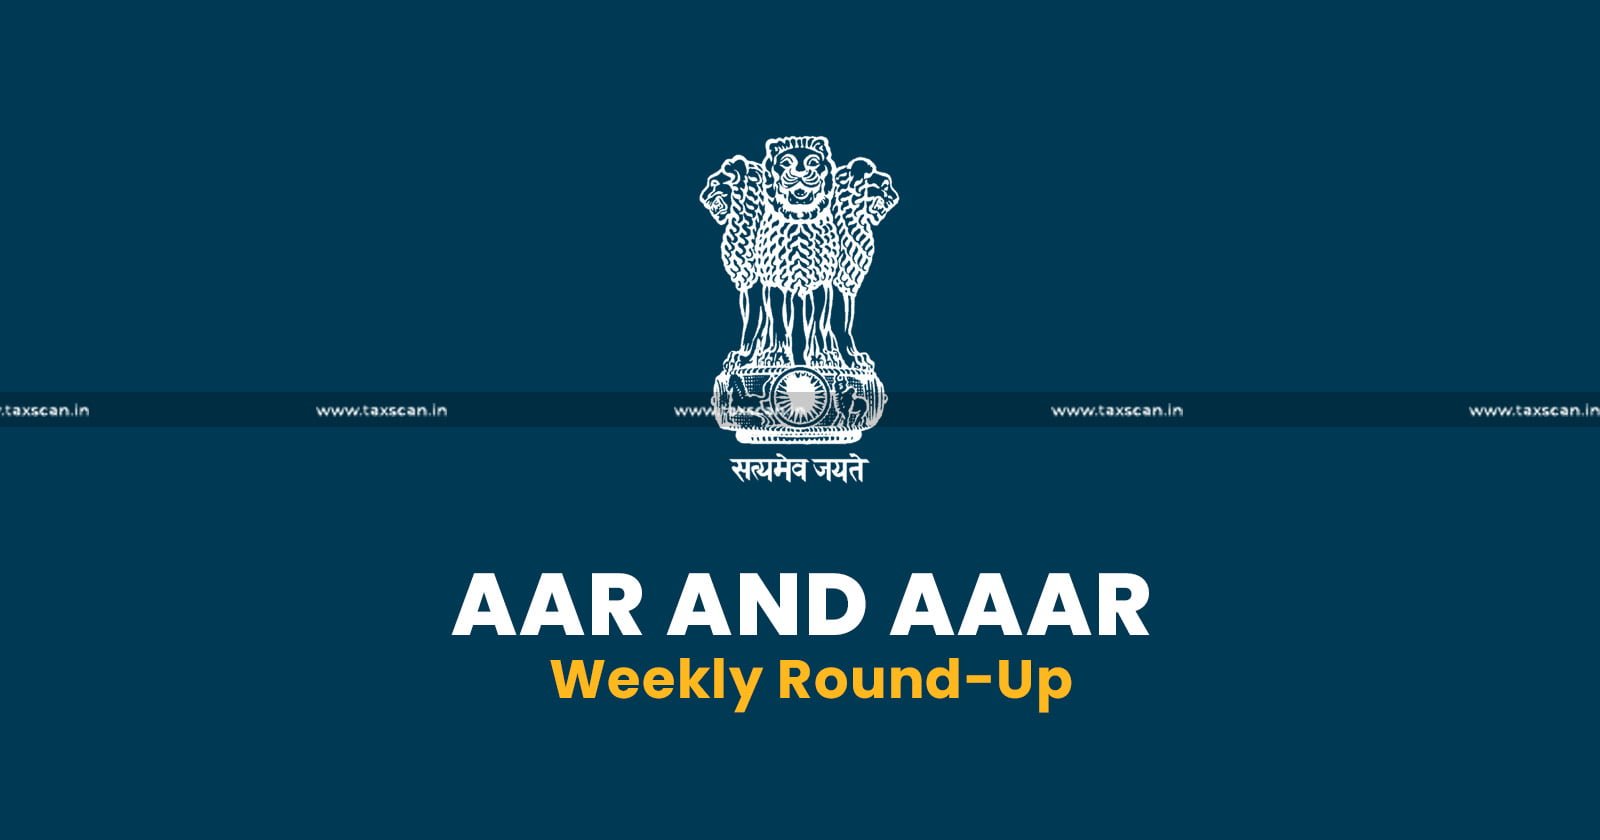 AAR and AAAR Weekly round up - AAR weekly round up - AAAR weekly round up - AAR weekly news - TAXSCAN